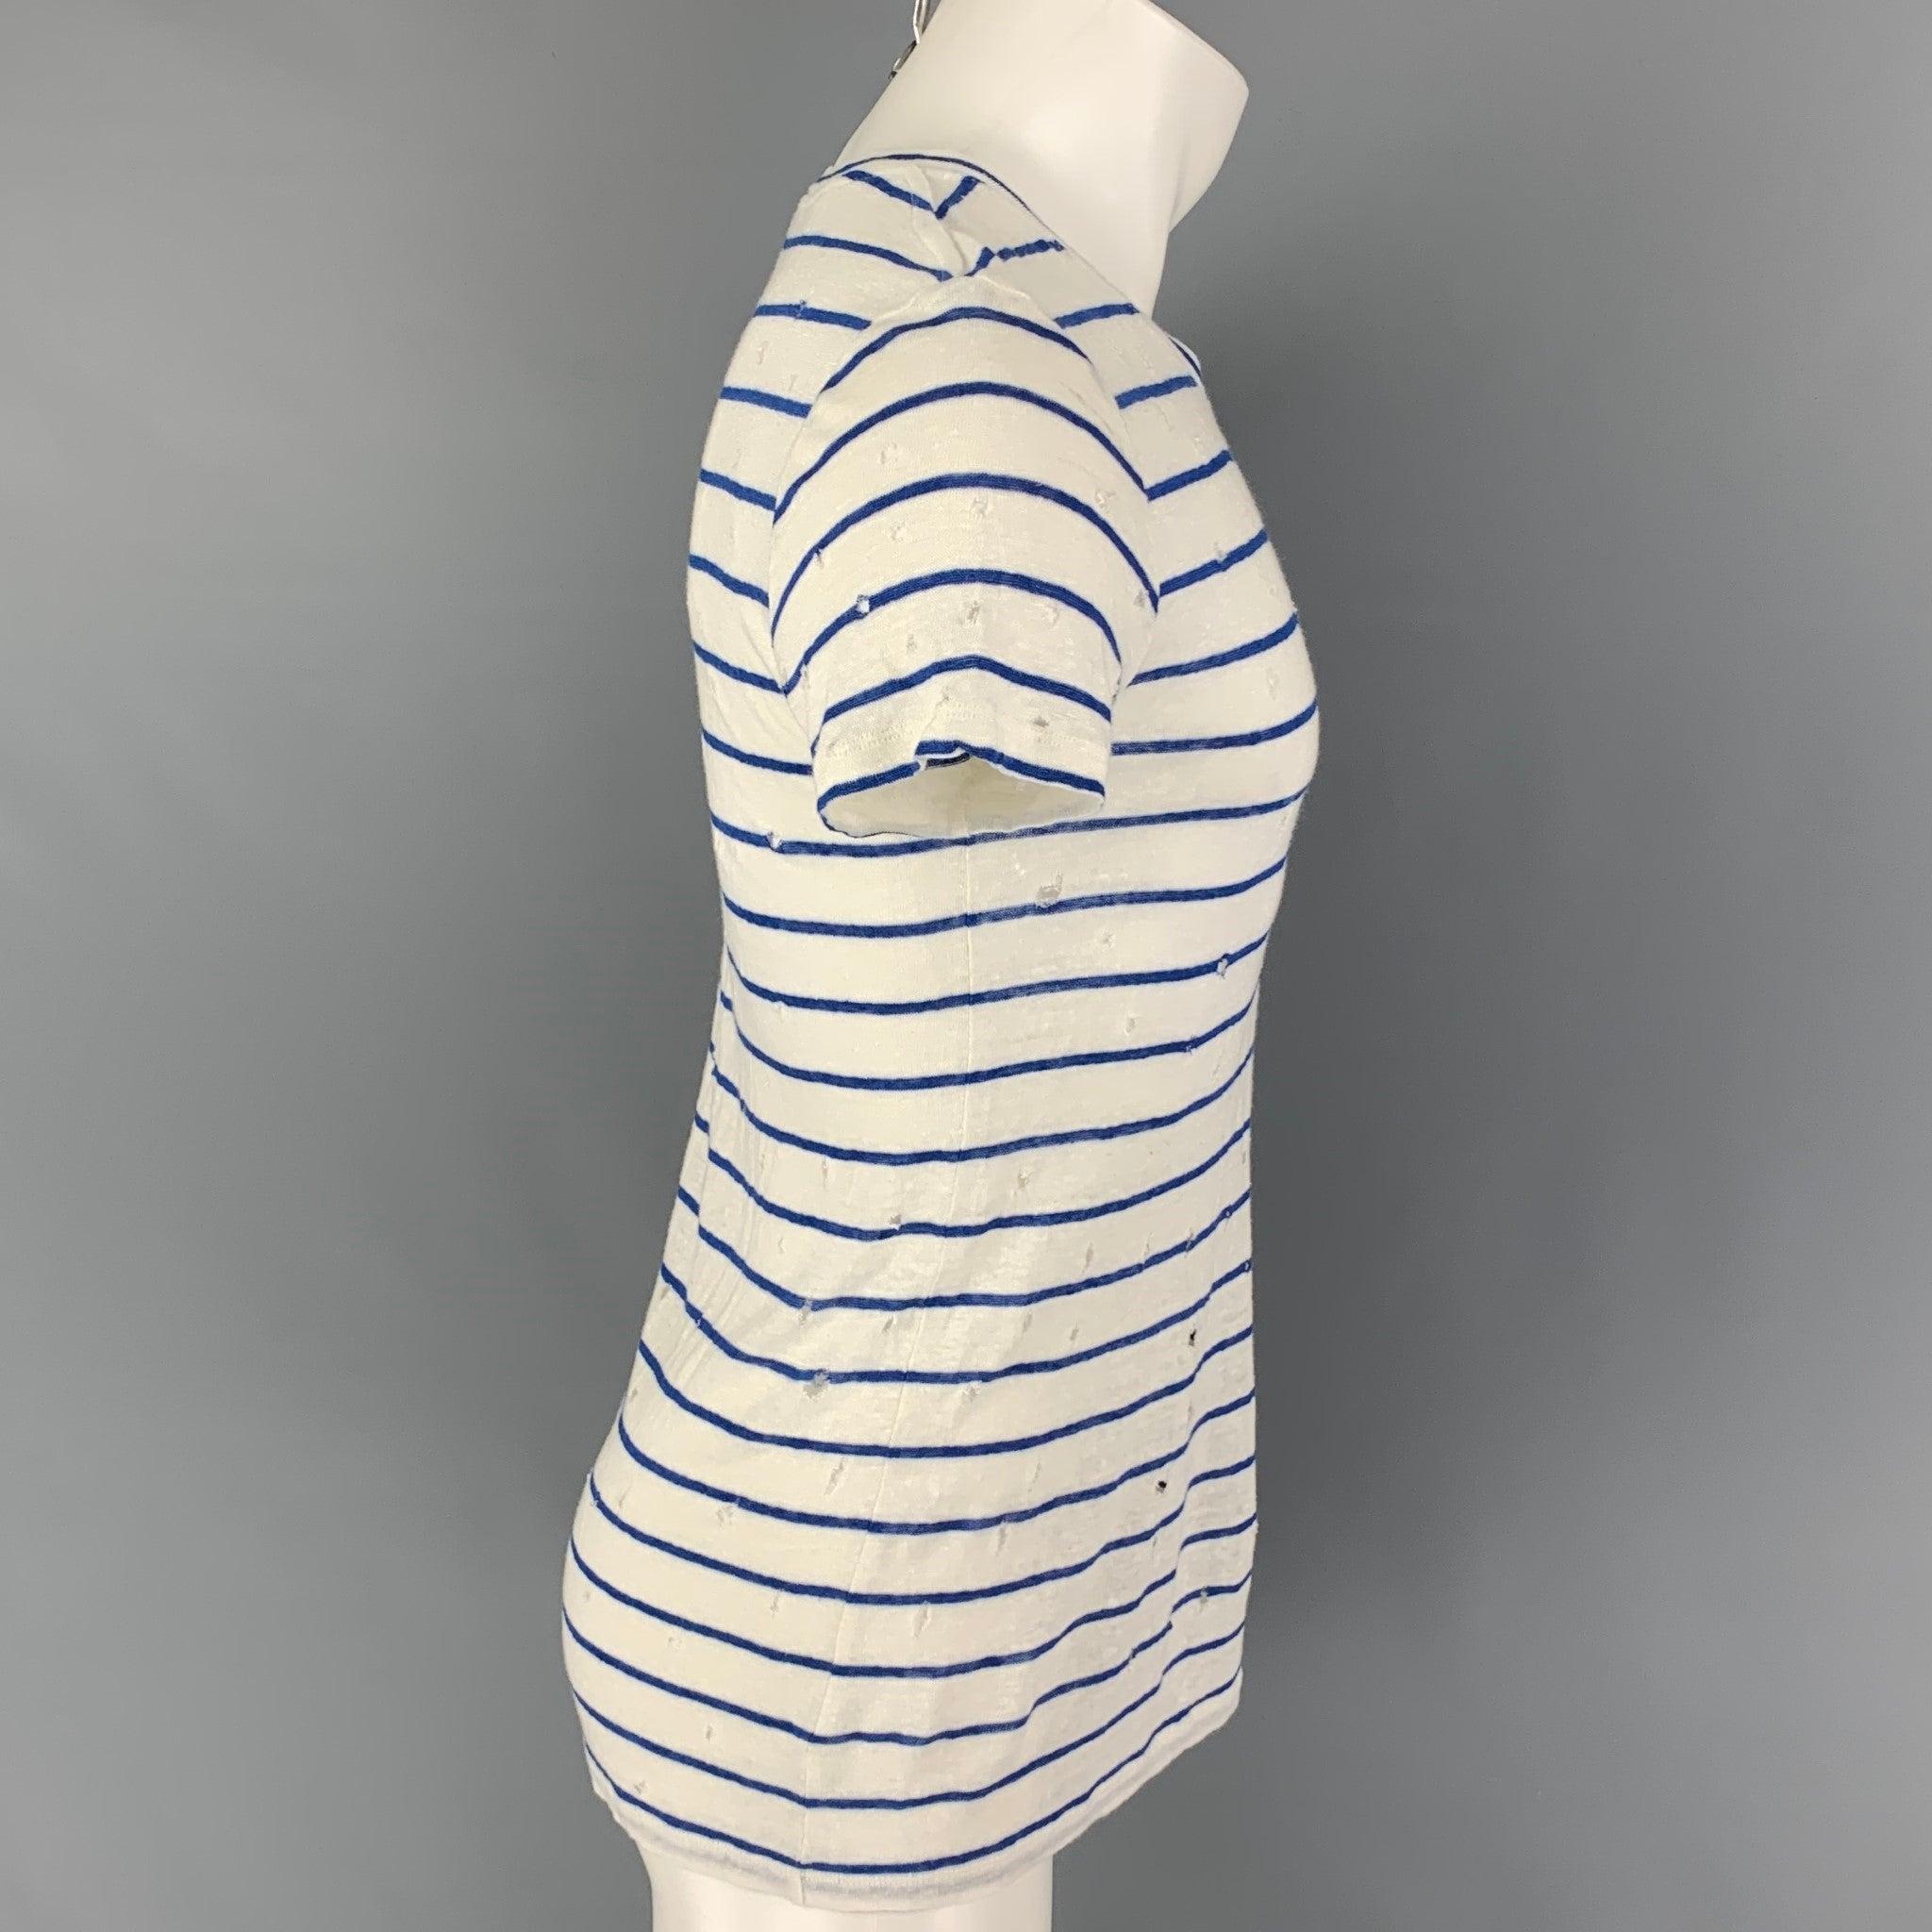 IRO 'Mina' T-Shirt aus weißem und blauem Leinen mit Details aus der Zeit und einem Rundhalsausschnitt. Hergestellt in Portugal.
Sehr guter gebrauchter Zustand.  

Markiert:   XS 

Abmessungen: 
 
Schultern:
16,5 Zoll  Brustkorb: 34 Zoll  Ärmel: 7